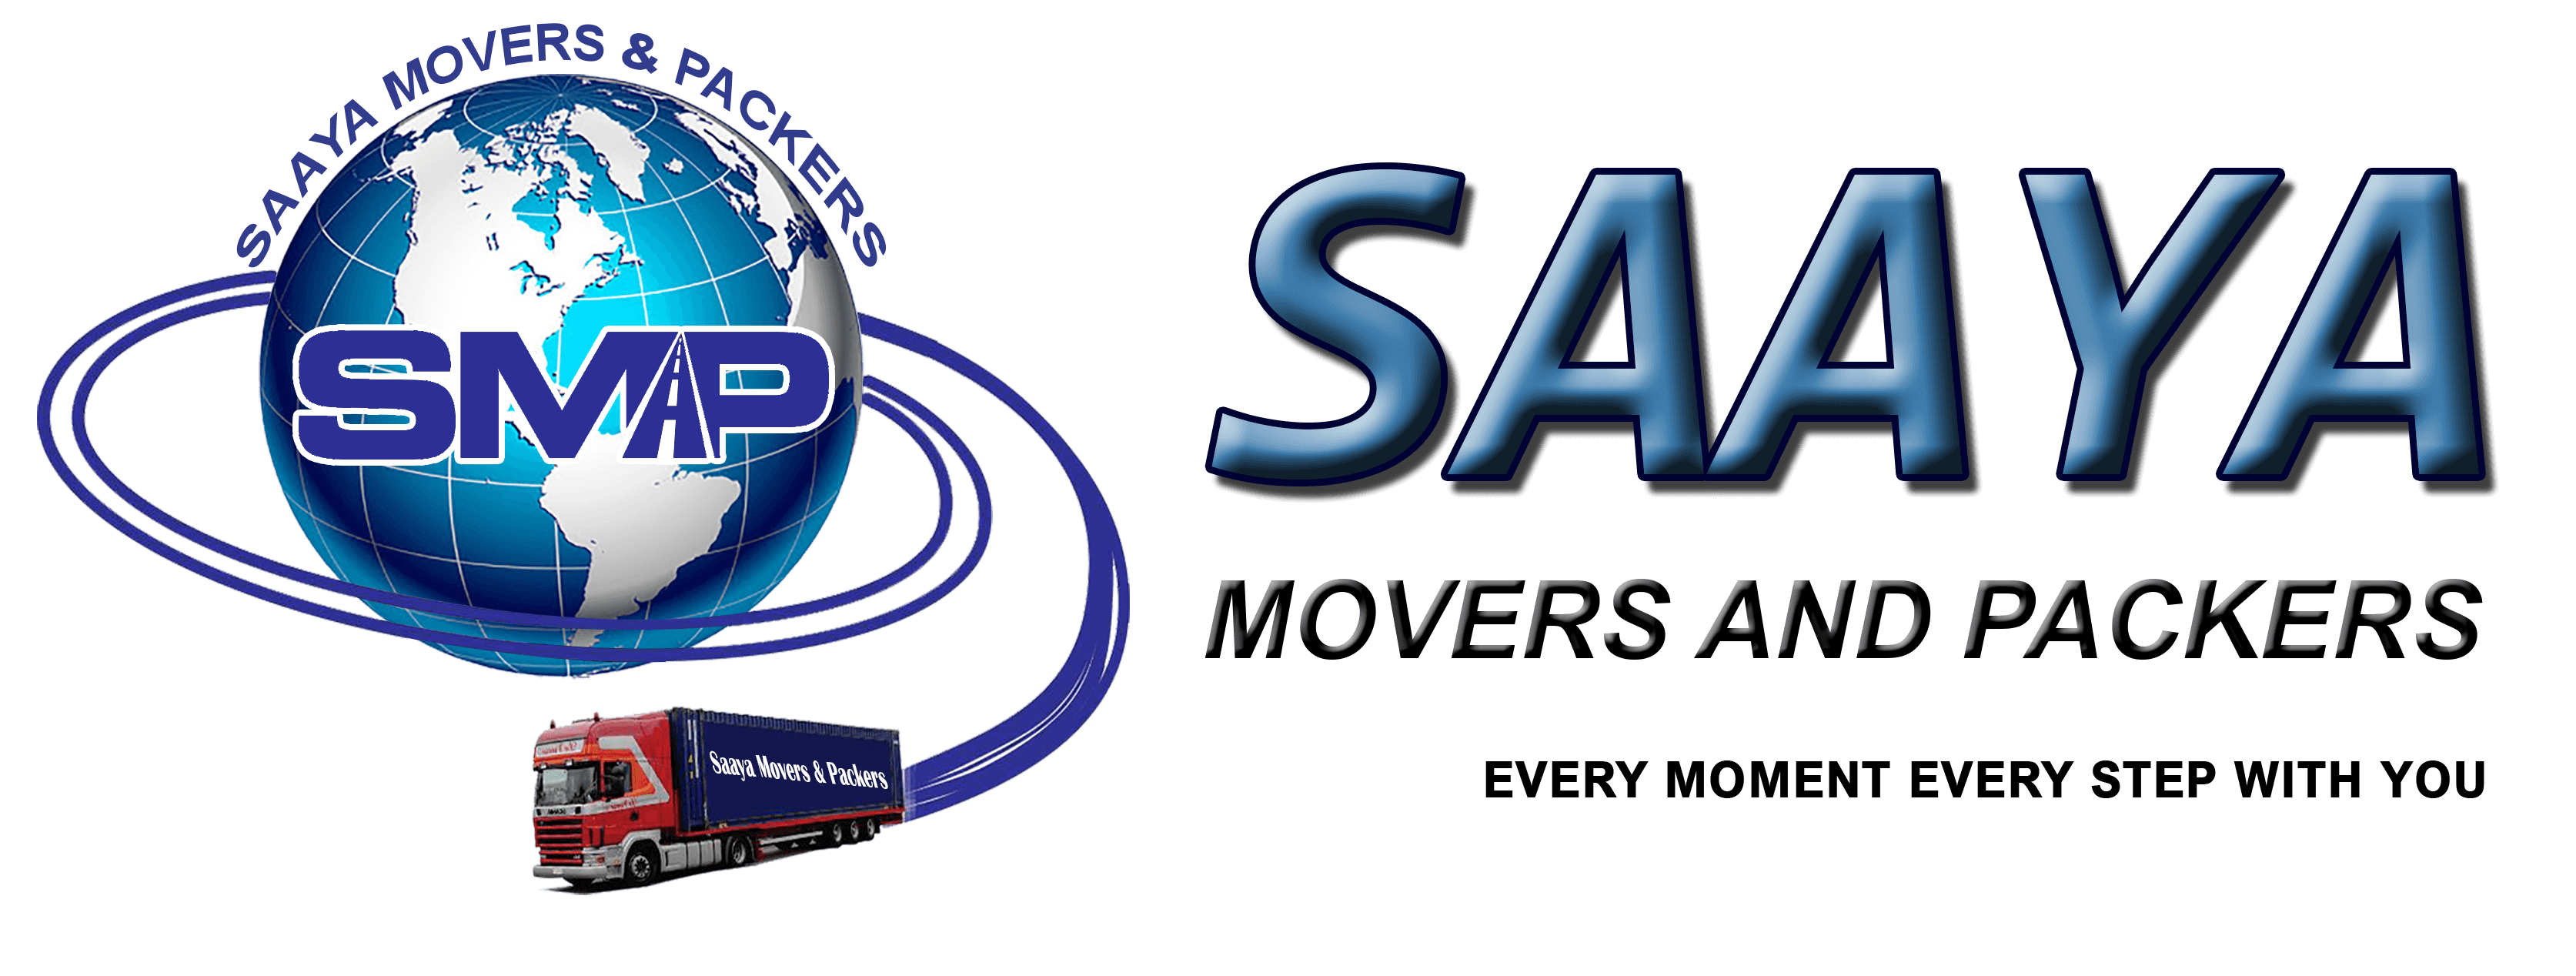 Saaya Movers